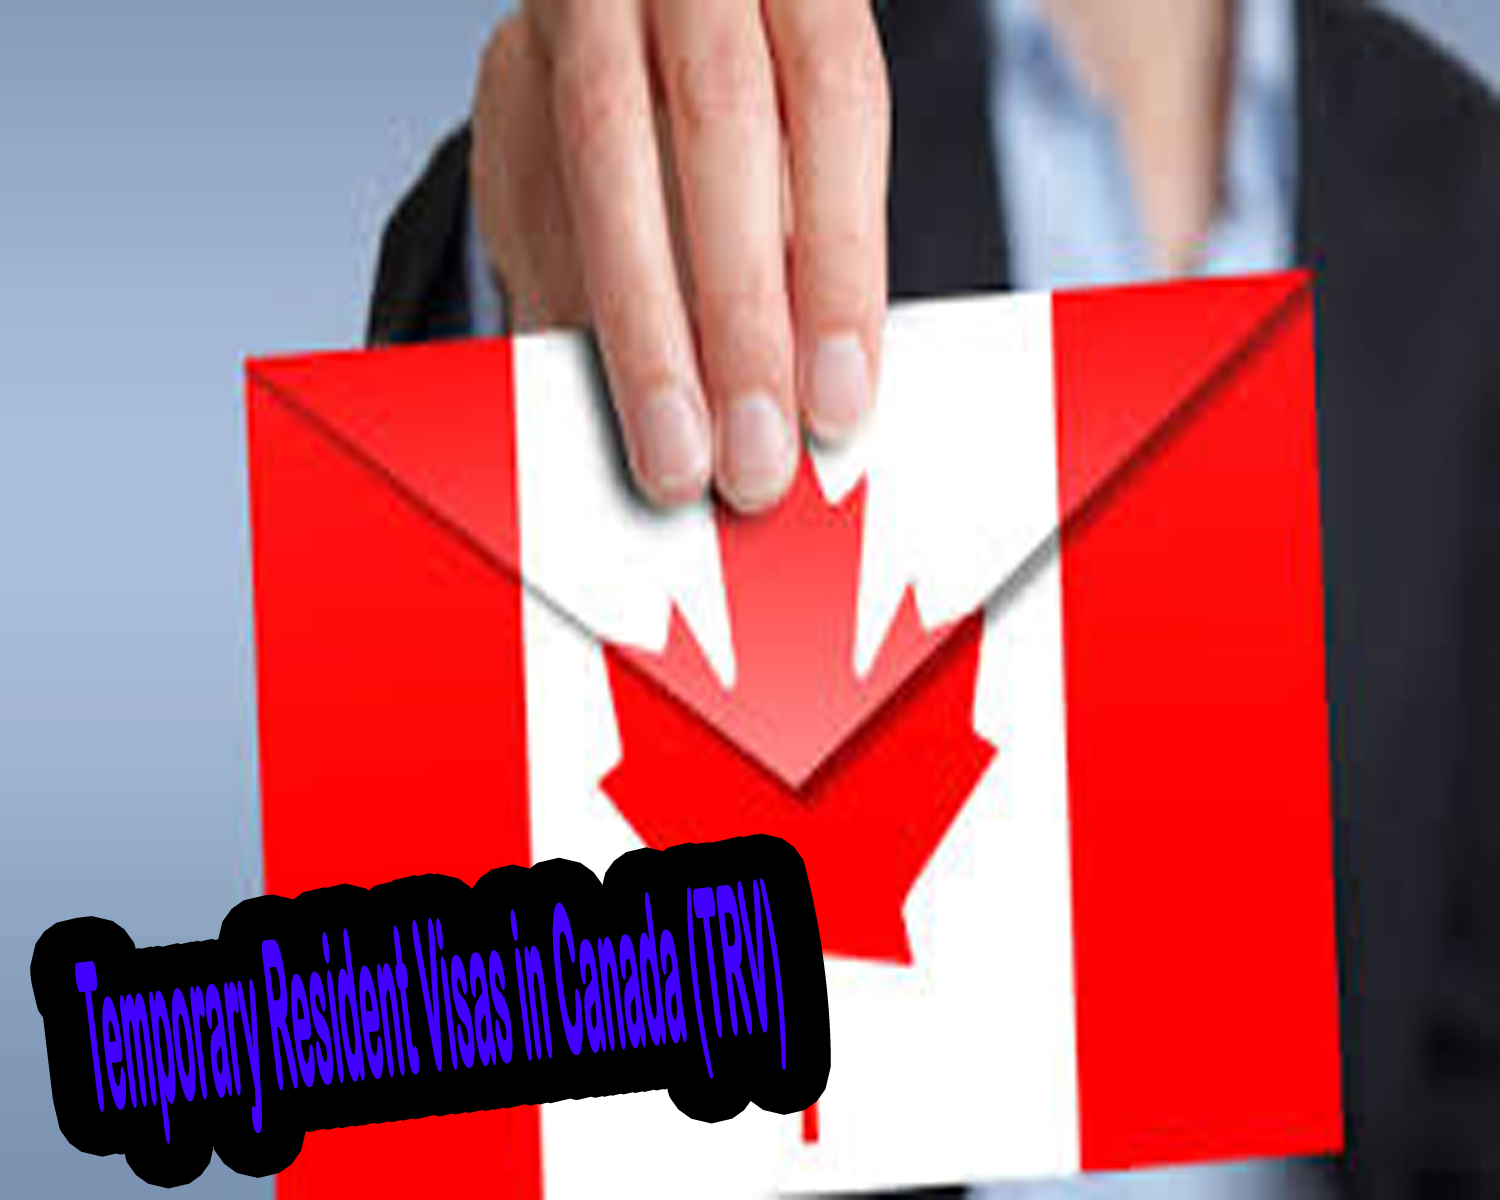 Temporary Resident Visas in Canada (TRV)